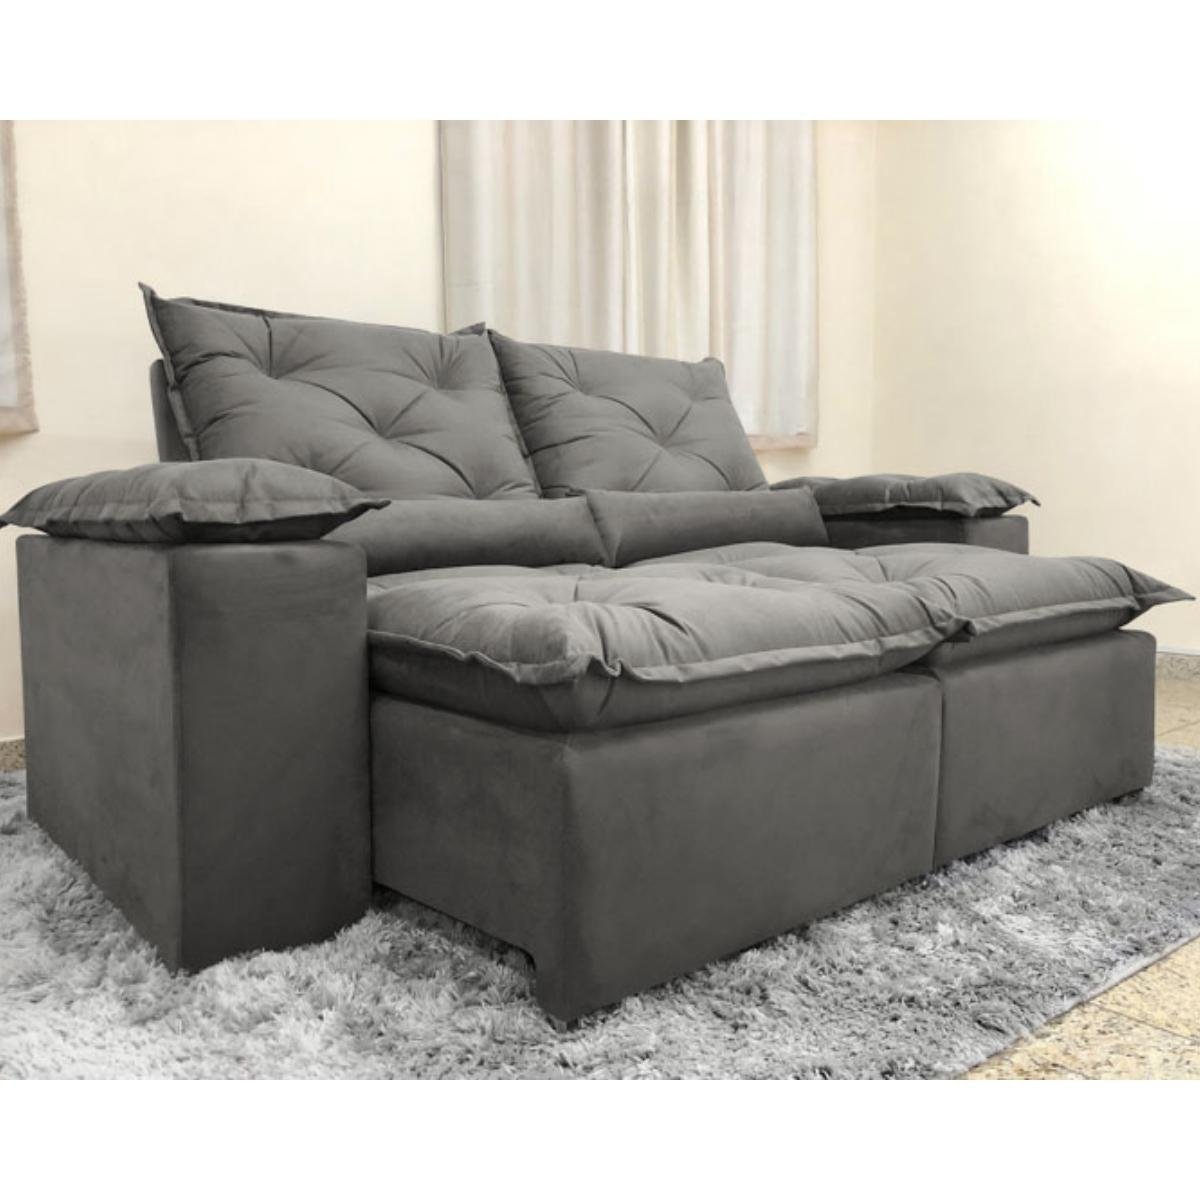 Sofa Reclinavel Retratil Design Elegante Athena 2,30m Veludo Cor:Cinza